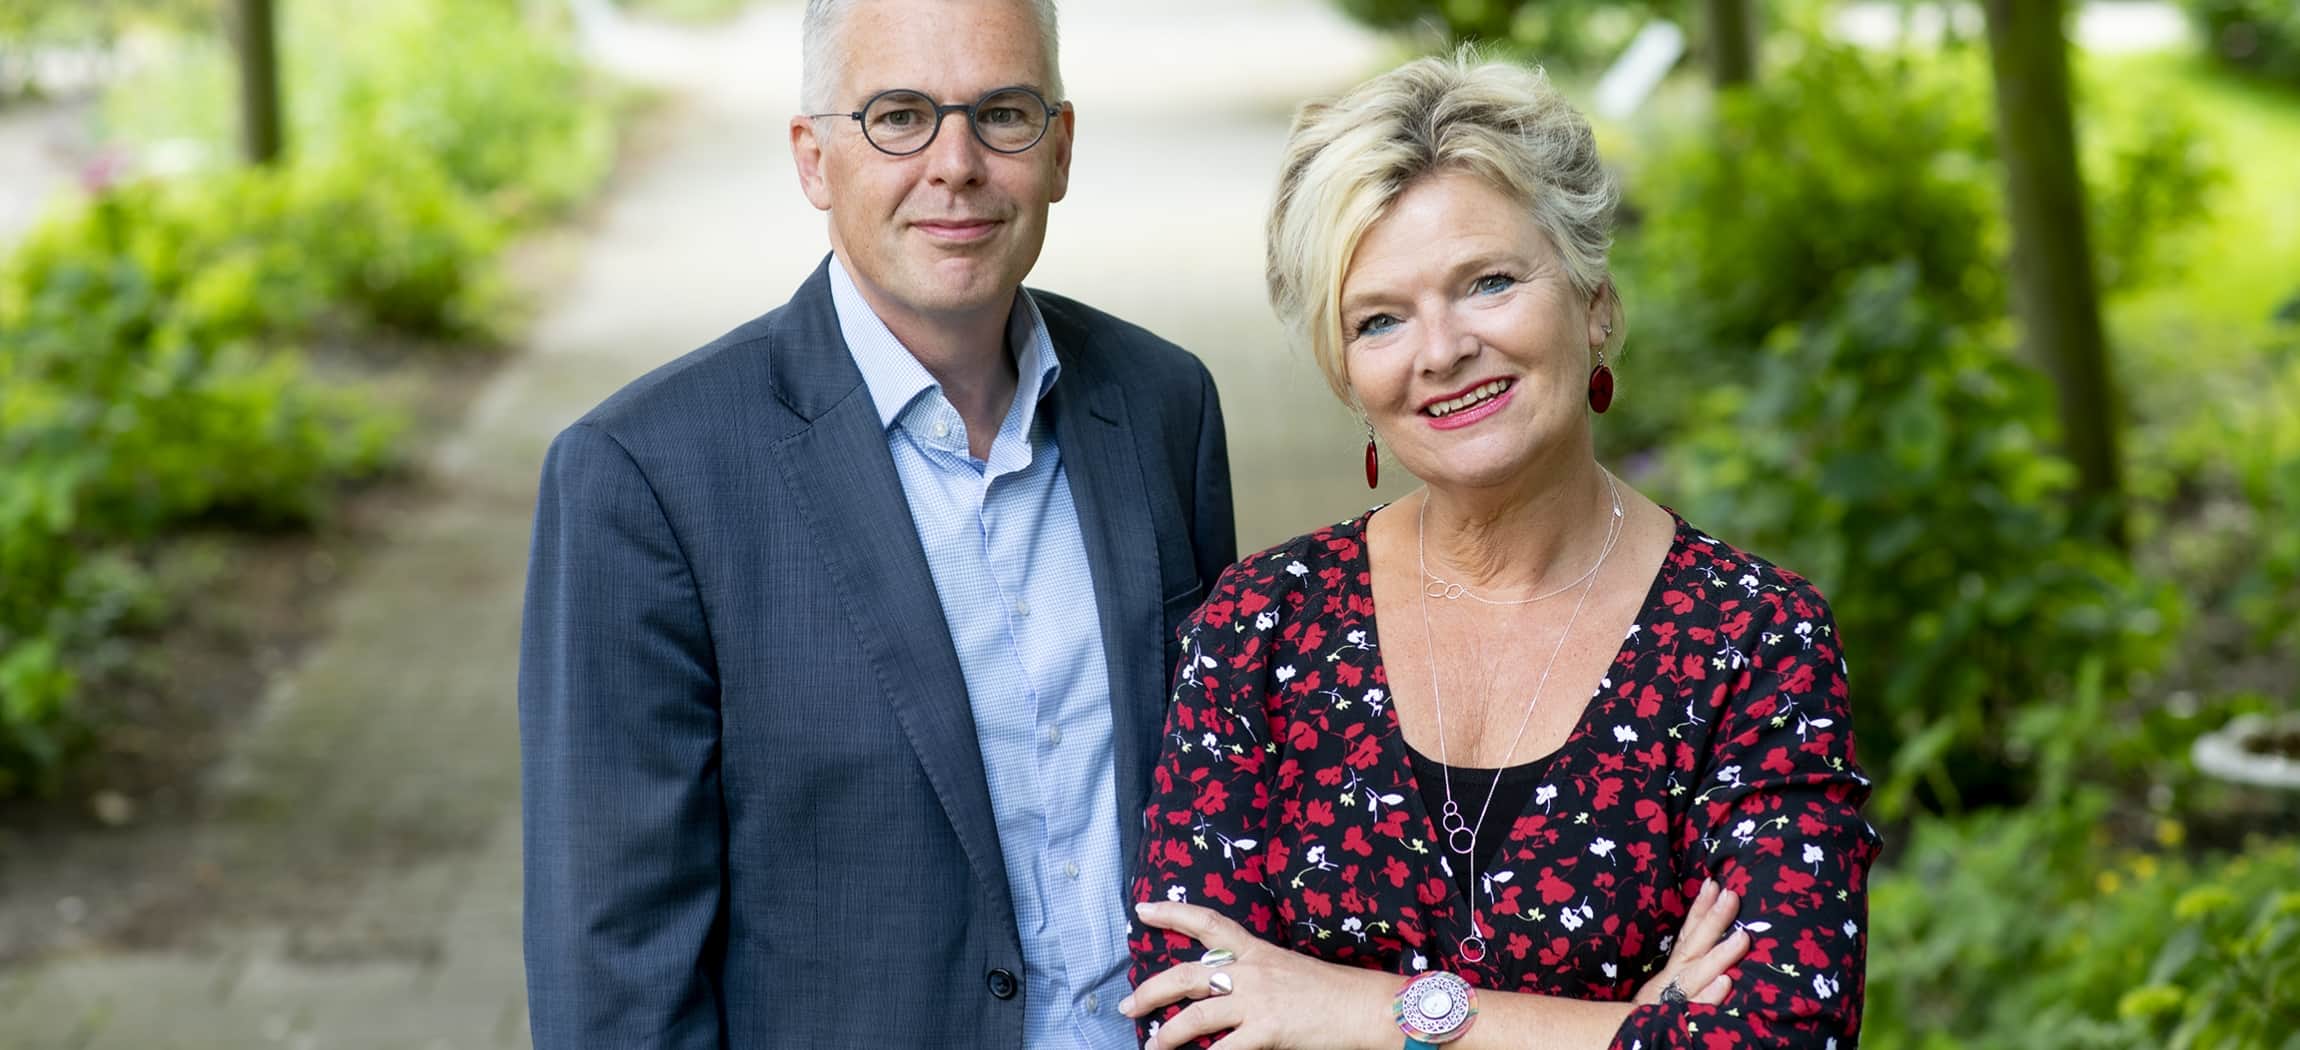 Ivo van der Klei en Inge Borghuis, Raad van Bestuur Amstelring, juni 2019